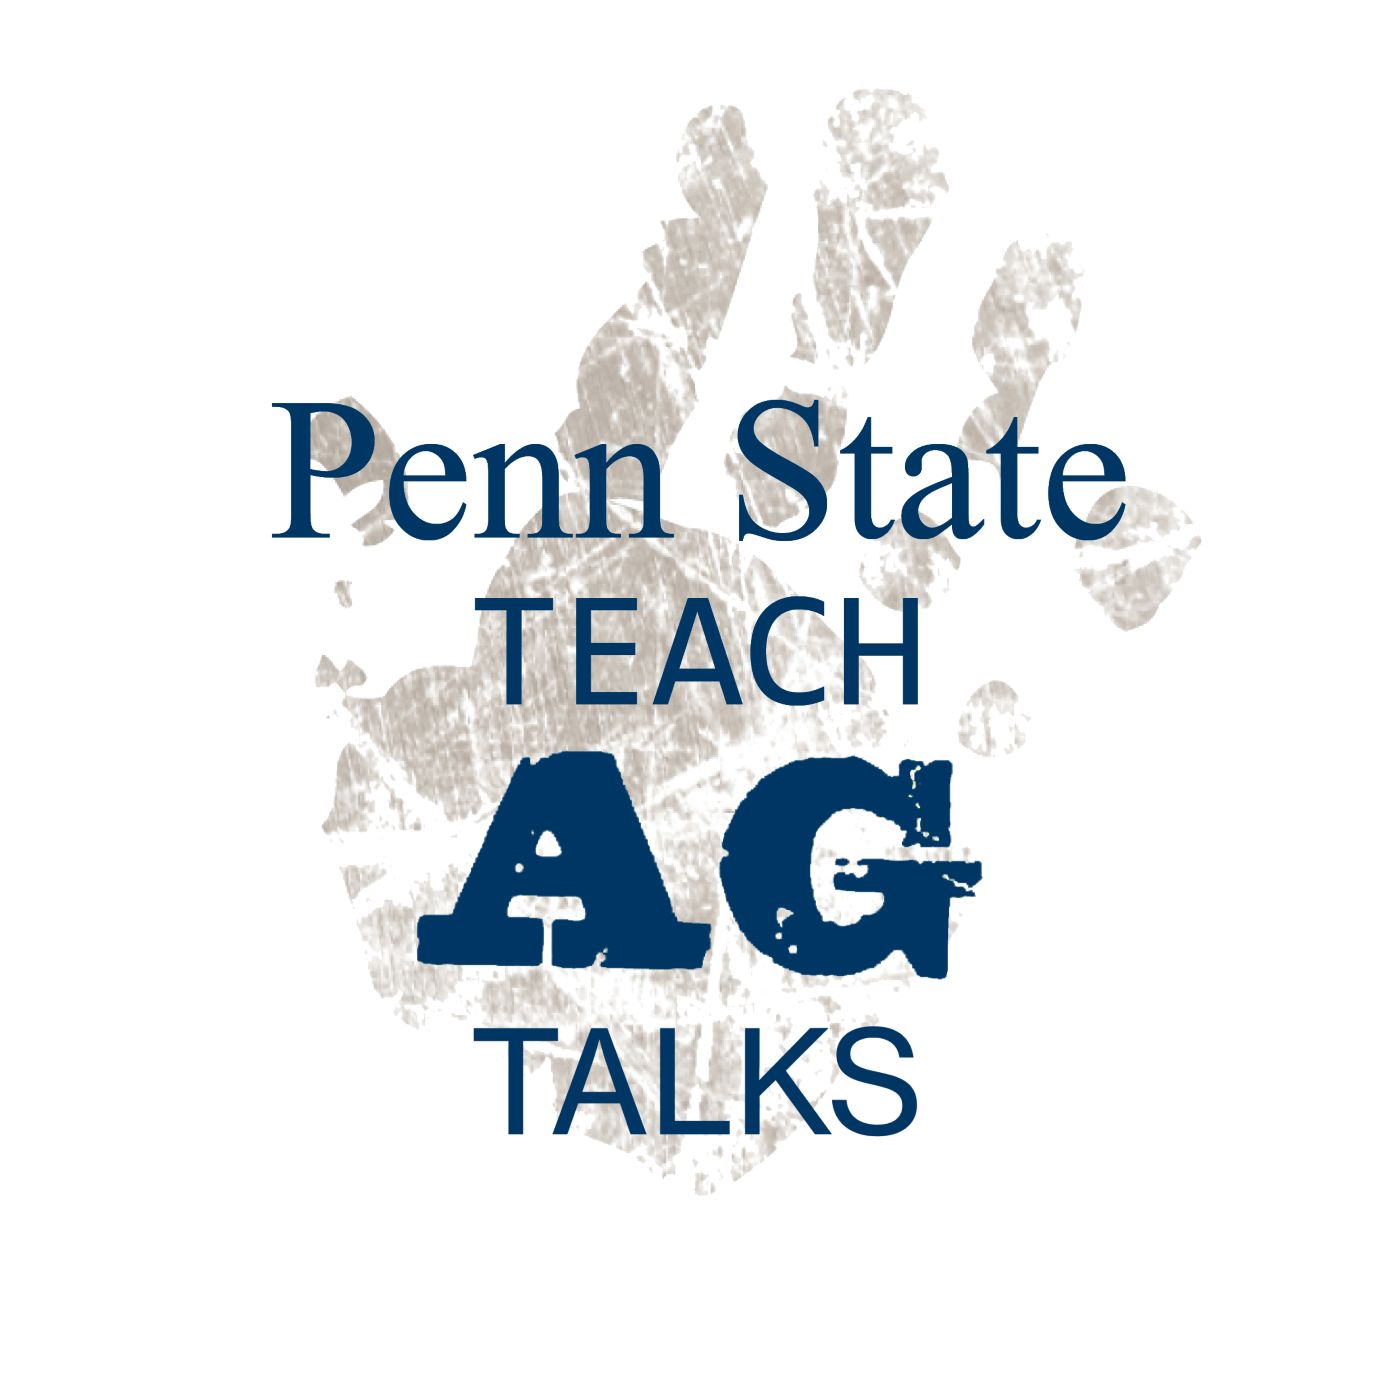 Teach Ag Talks